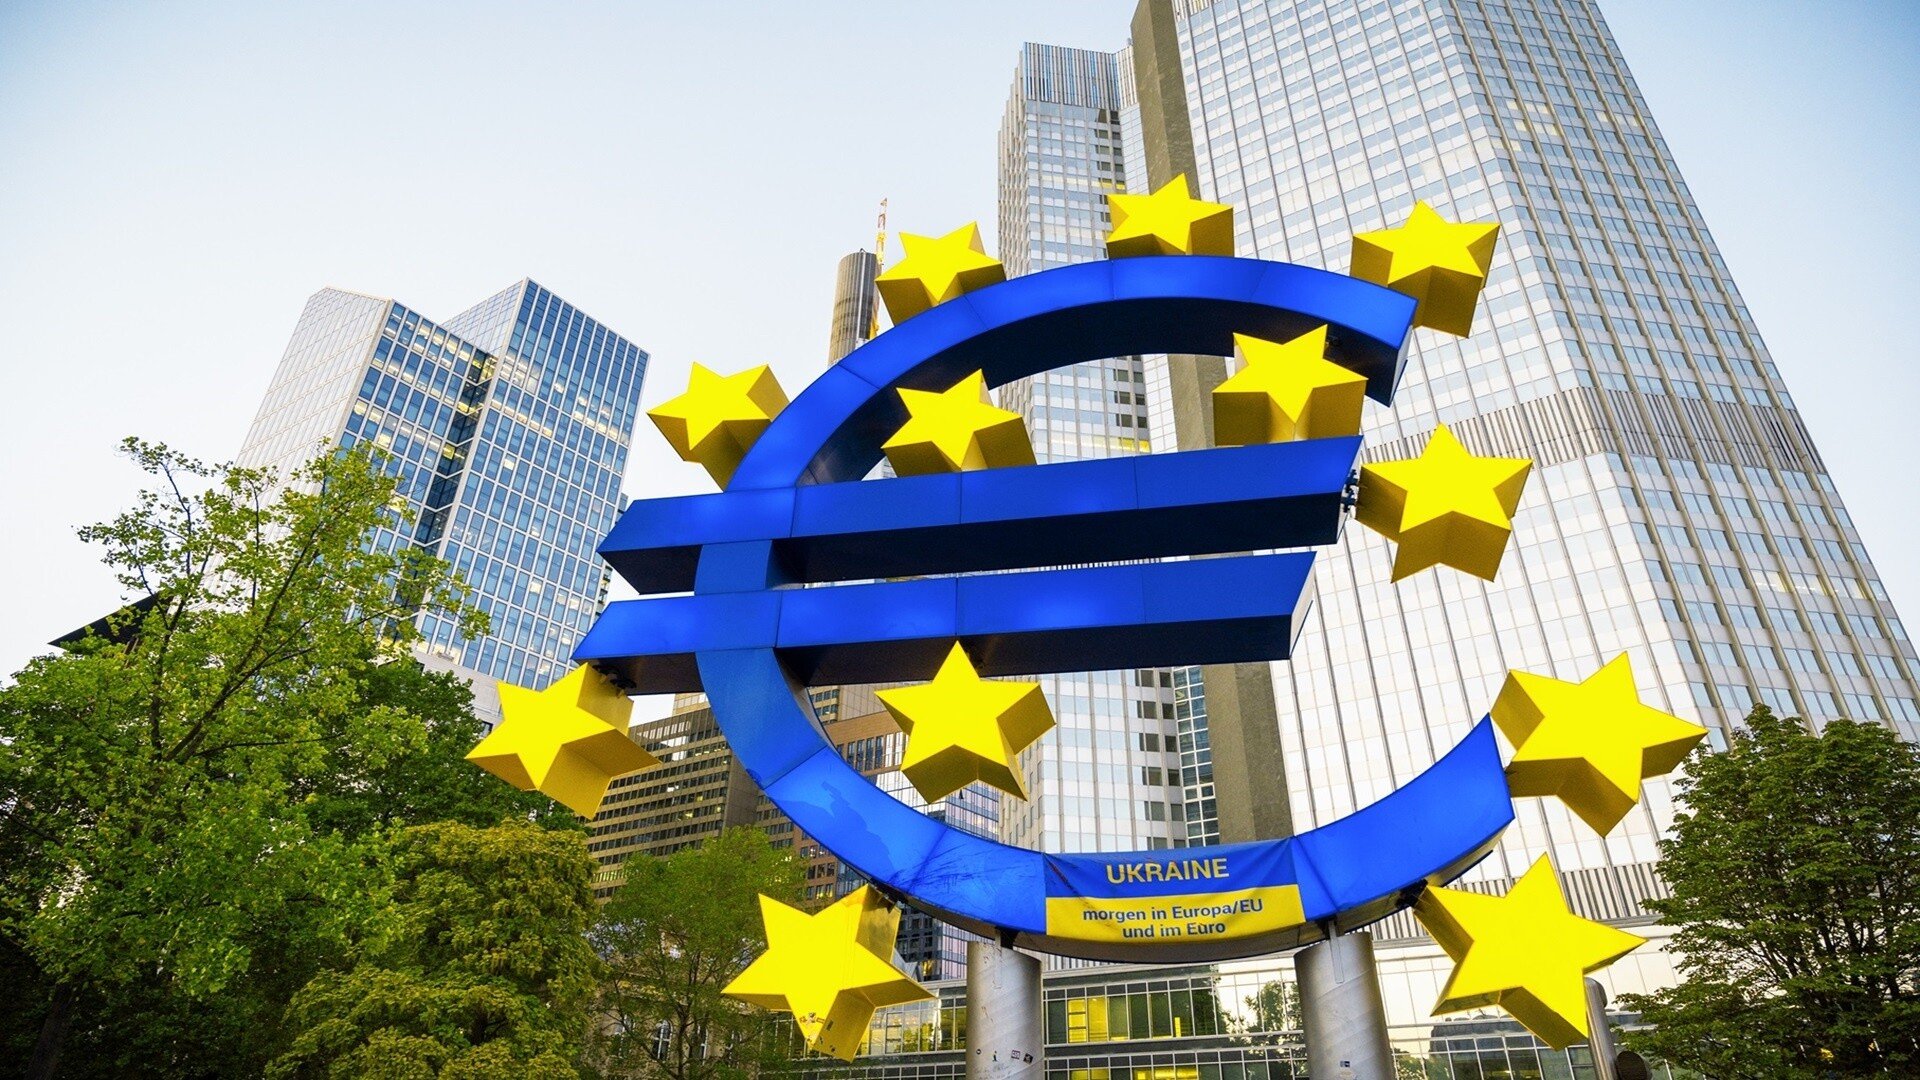 Sadzby ECB môžu tento rok klesať. Ovplyvní to aj dlžníkov